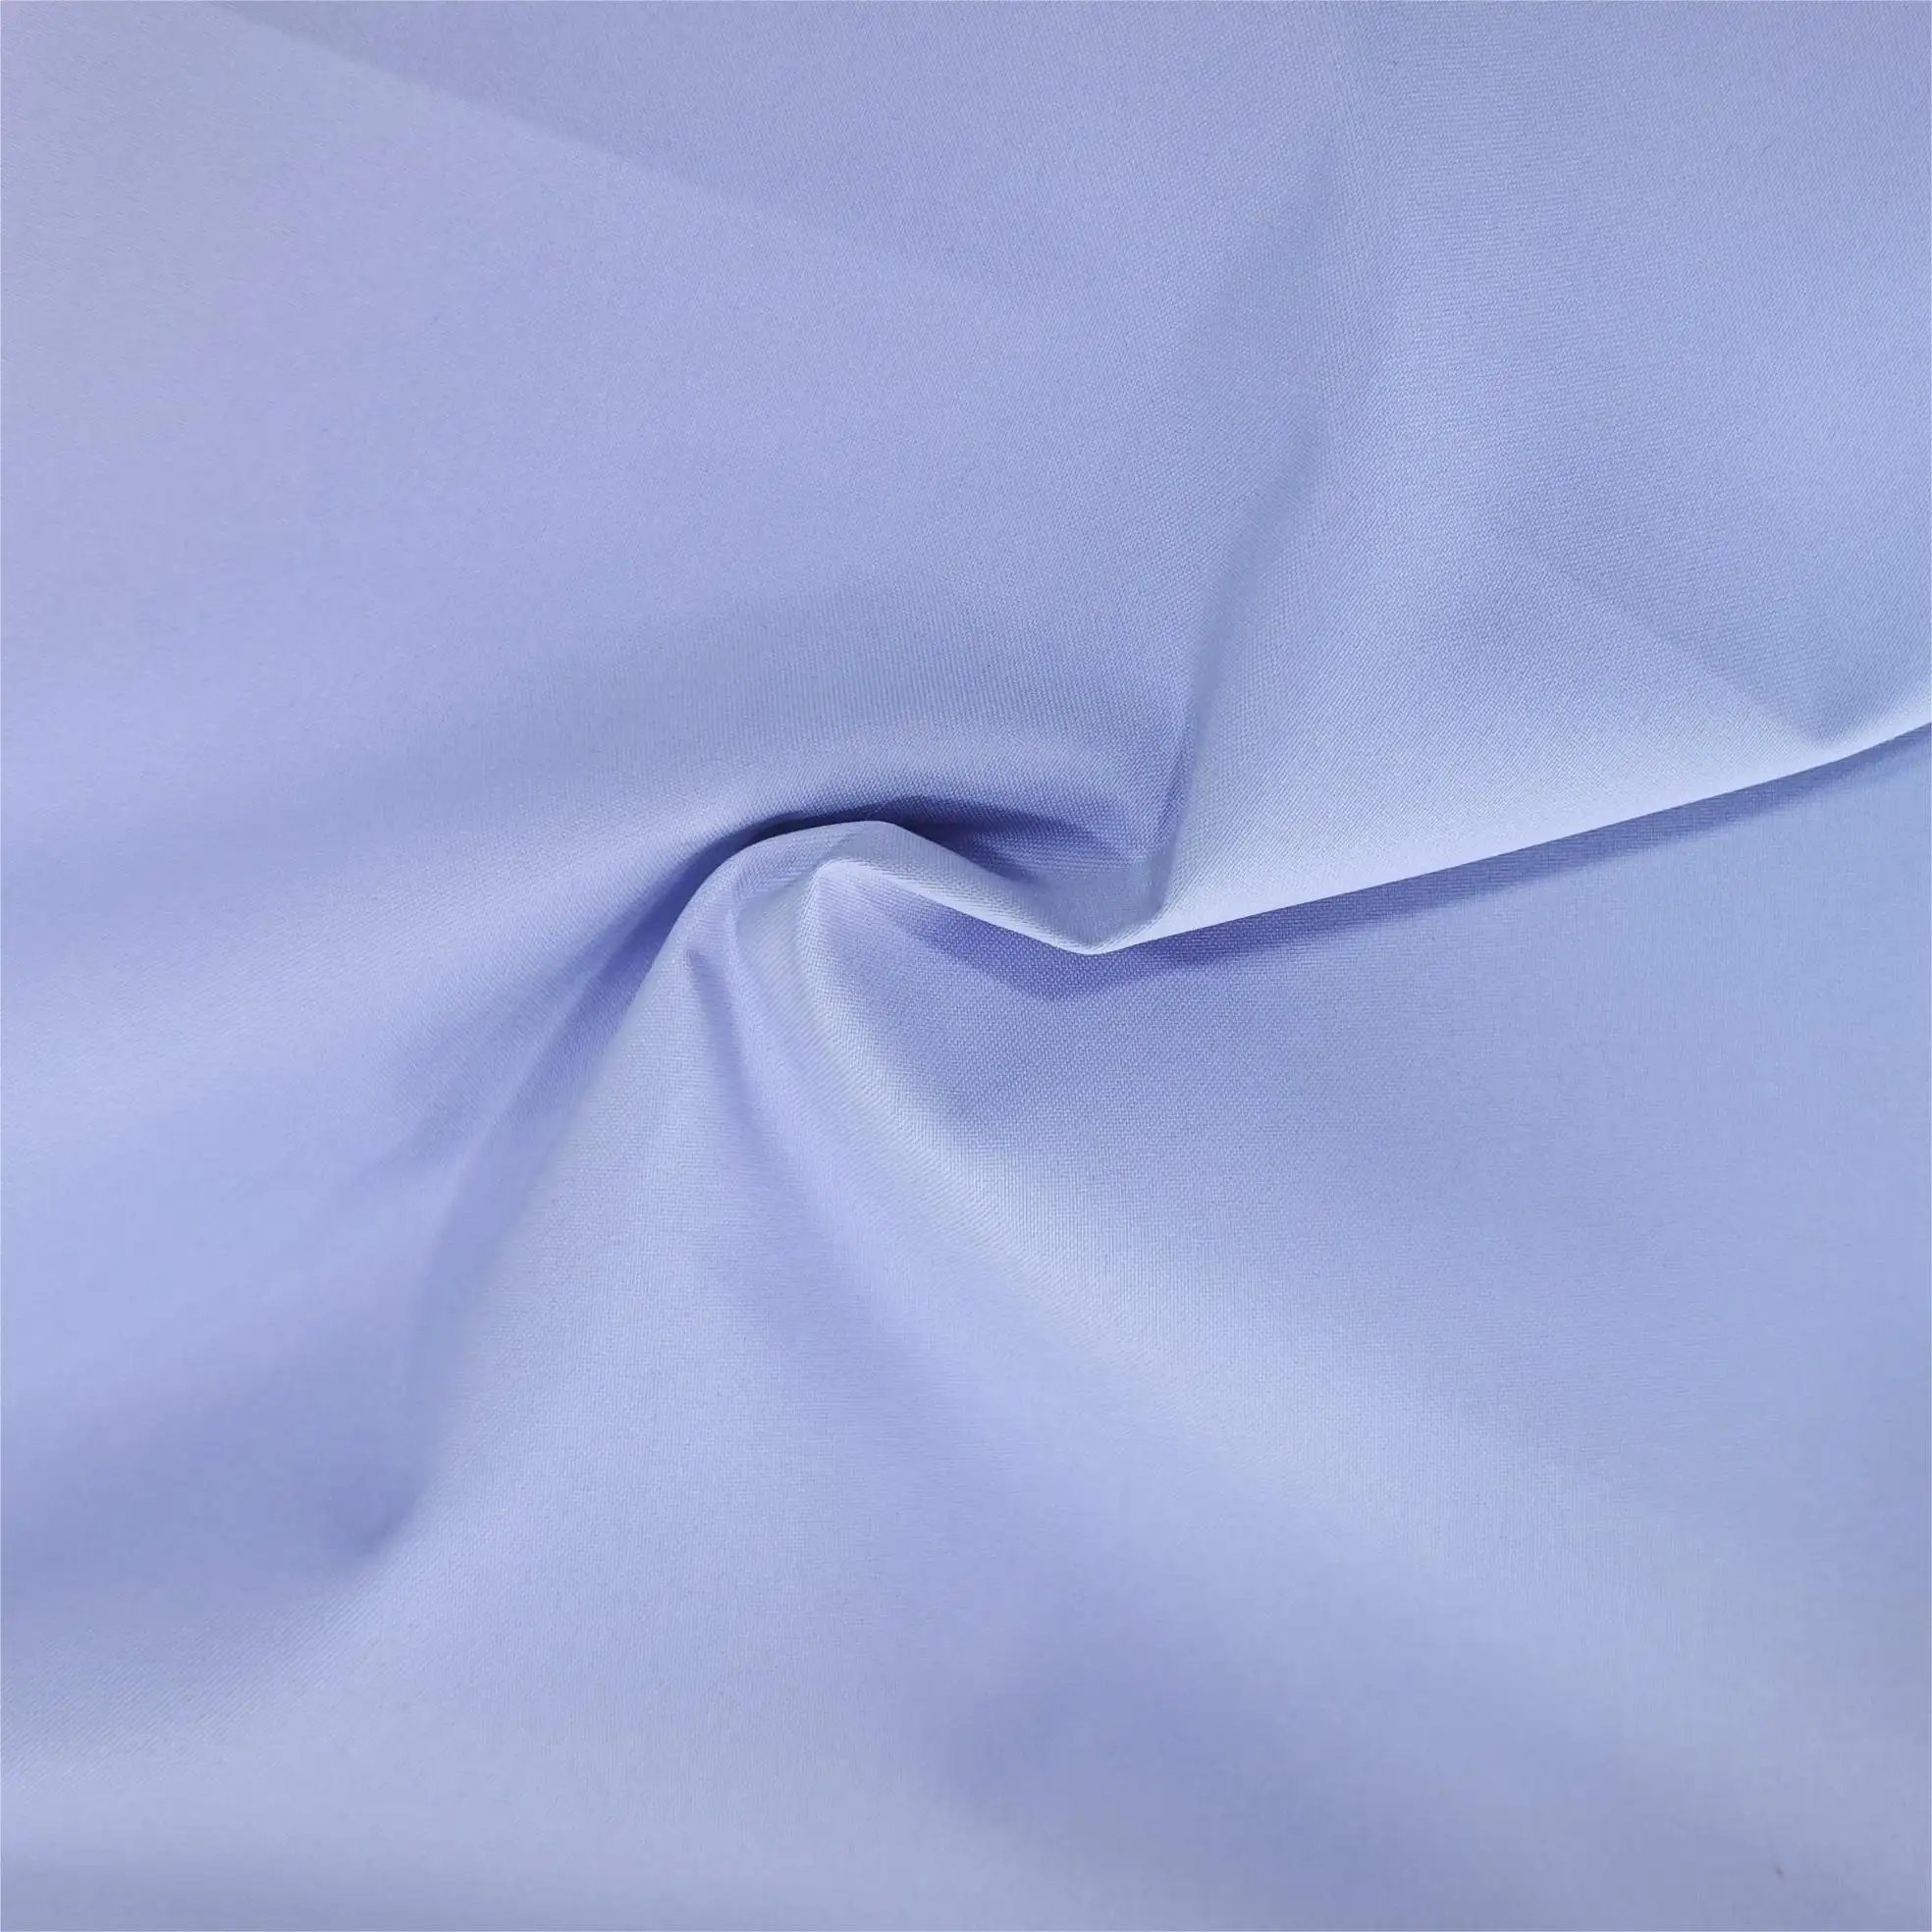 15D cangkang keras tahan air mata elastisitas tinggi menggunakan kain poliester untuk Jaket luar ruangan